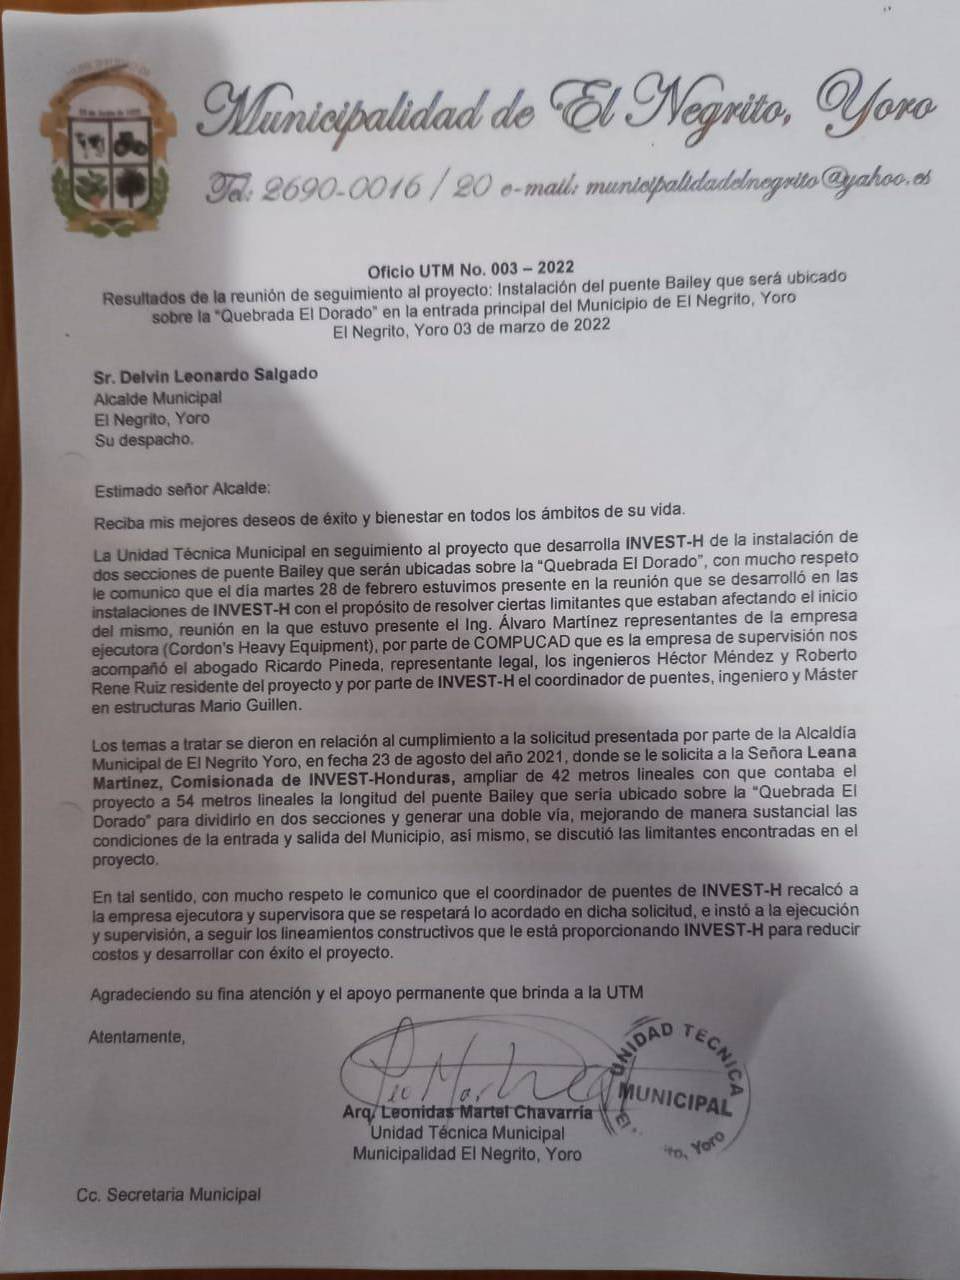 $!La Municipalidad de El Negrito, Yoro, mostró documentos de sus solicitudes al gobierno central.